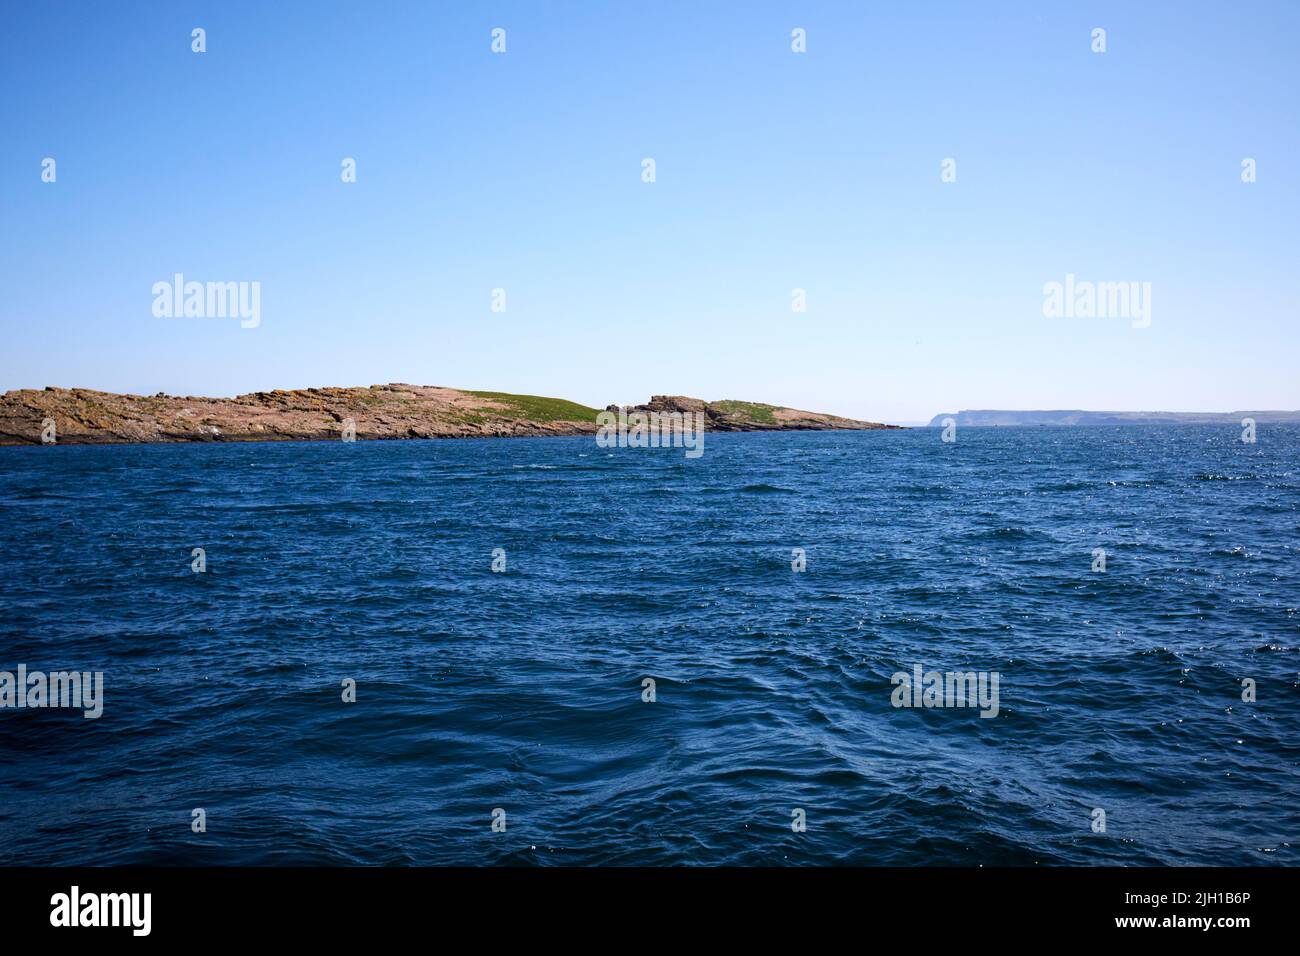 île winkle grande île de skerry en mer au large des îles de skerries avec l'île de rathlin en arrière-plan sur la côte nord de l'irlande pendant un été plus ou plus Banque D'Images